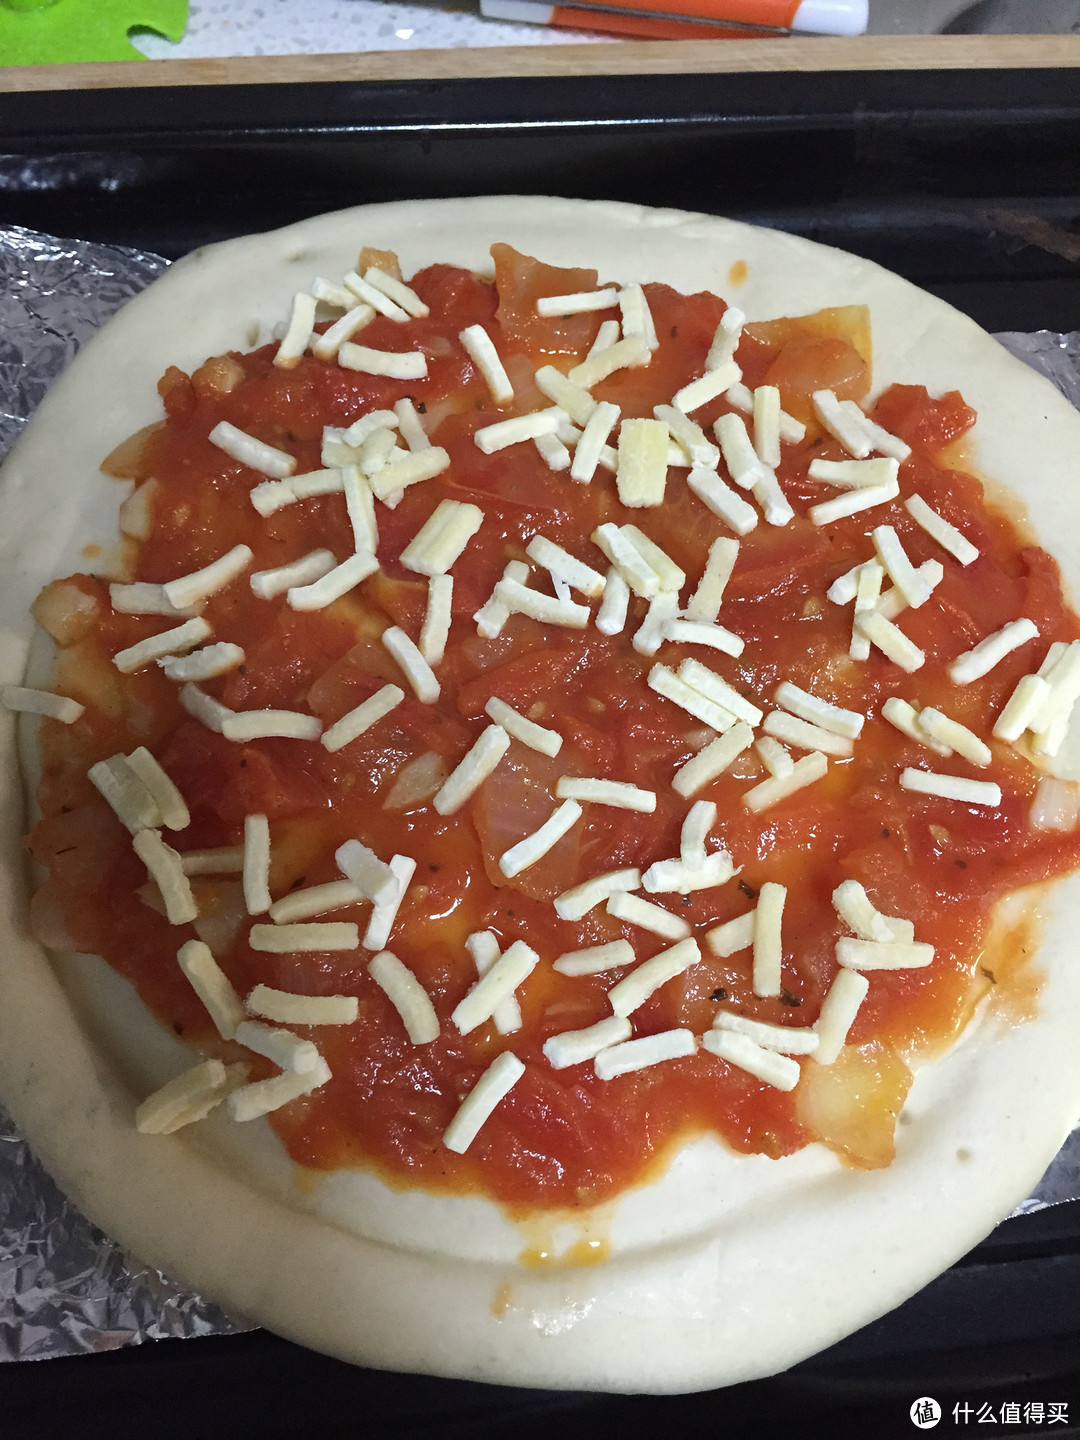 一天时间准备的生日餐，提拉米苏+披萨+意大利面